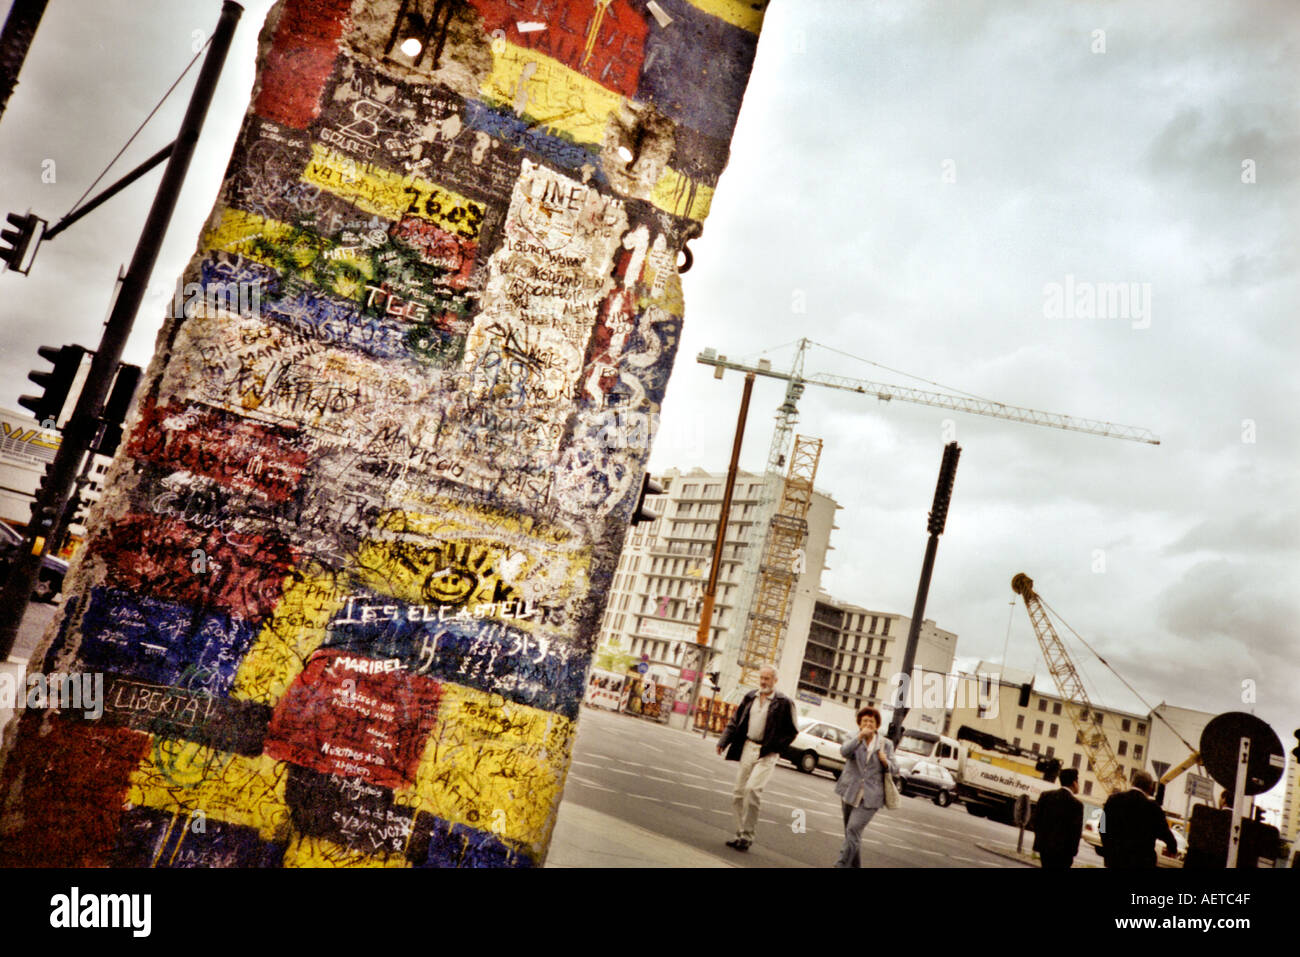 Morceau du mur de Berlin Potsdamer Platz, Berlin, Allemagne - alors que les travaux de construction encore en cours - image prise sur un appareil photo Lomo Banque D'Images